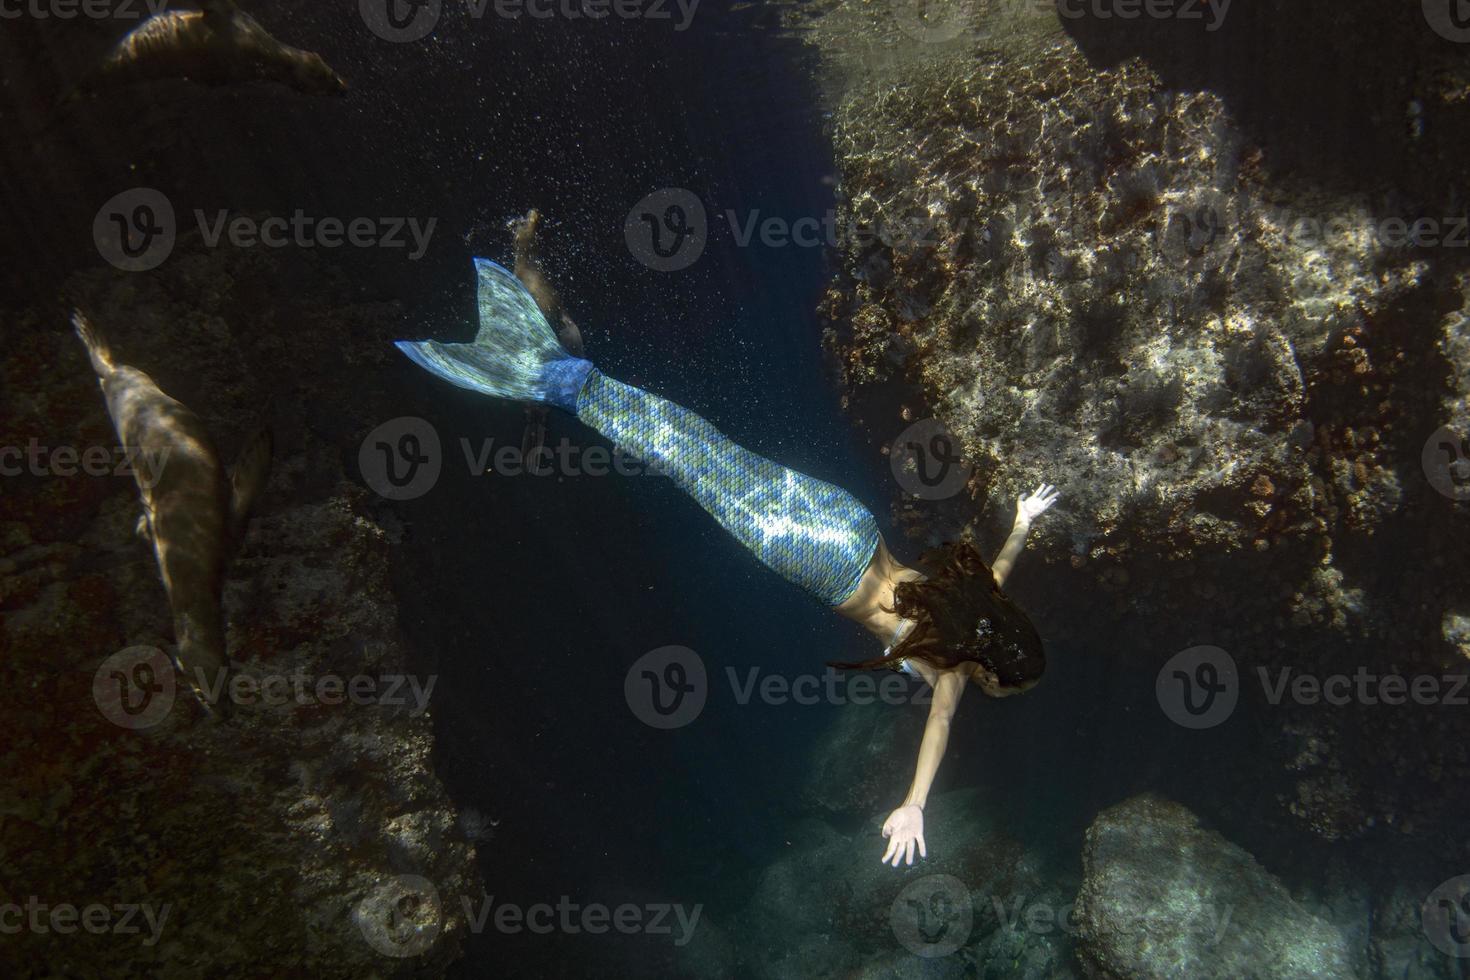 sirena nadando bajo el agua en el mar azul profundo con una foca foto